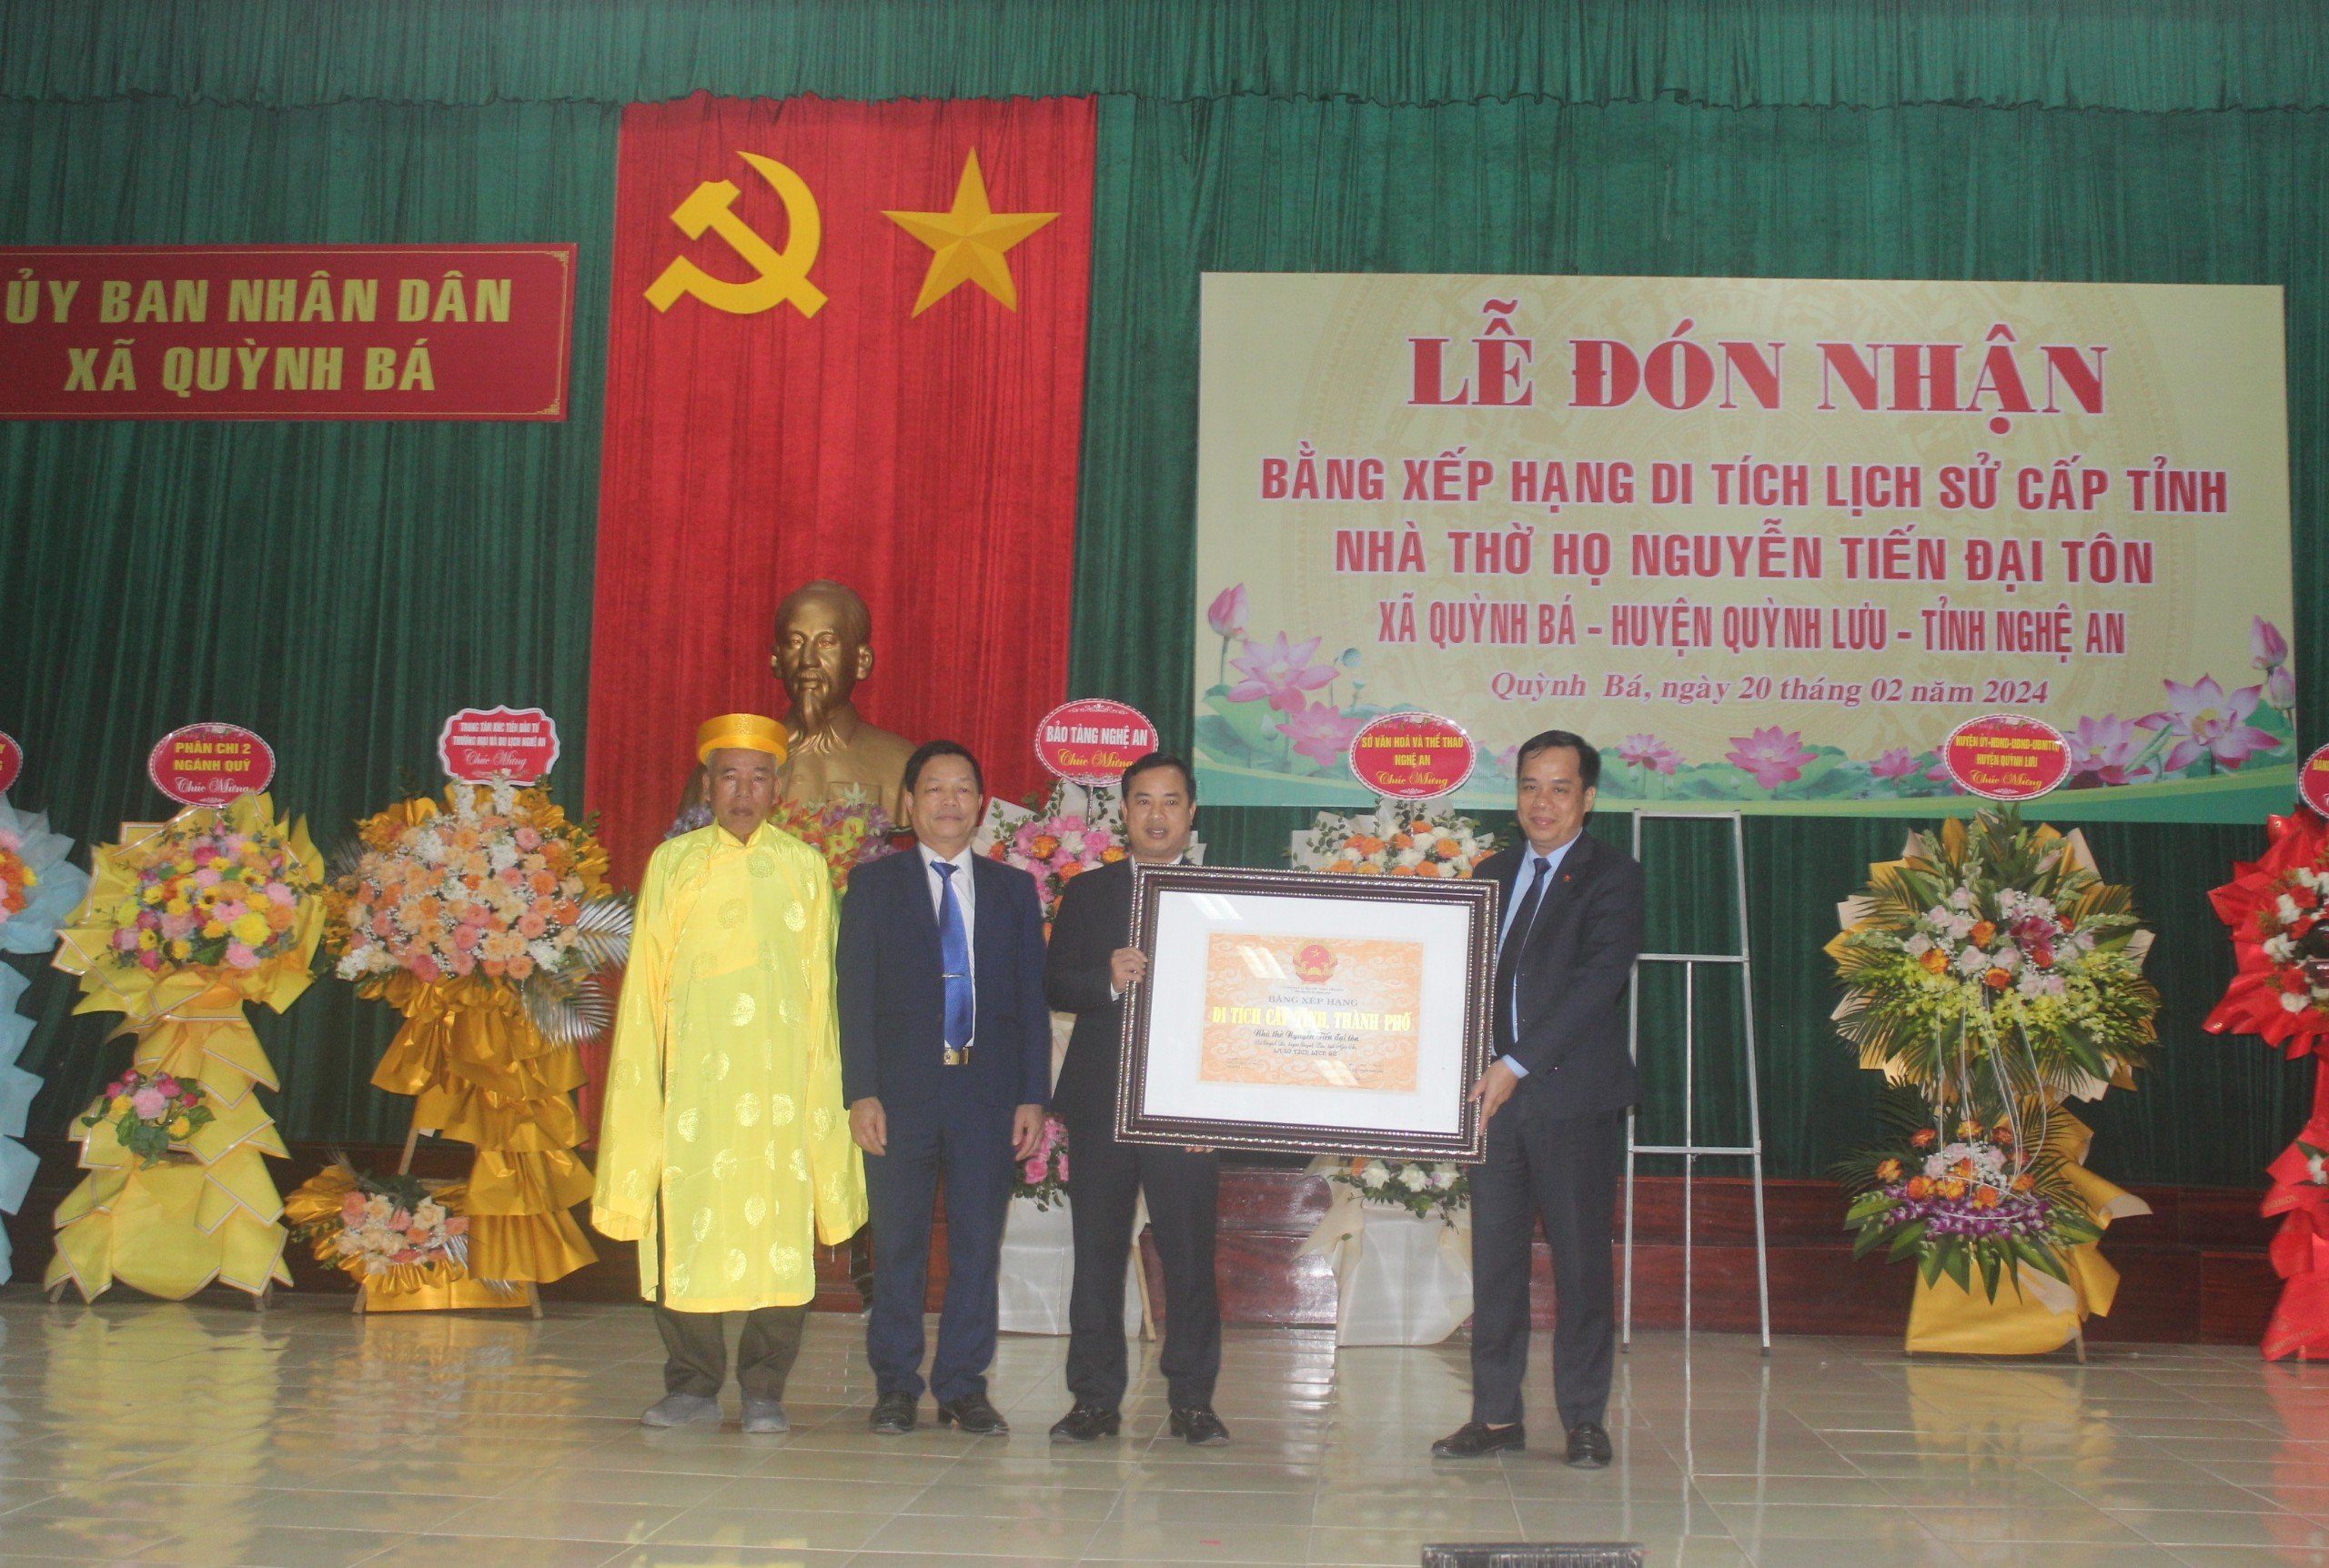 Xã Quỳnh Bá đón bằng xếp hạng di tích lịch sử cấp tỉnh Nhà thờ họ Nguyễn Tiến đại tôn